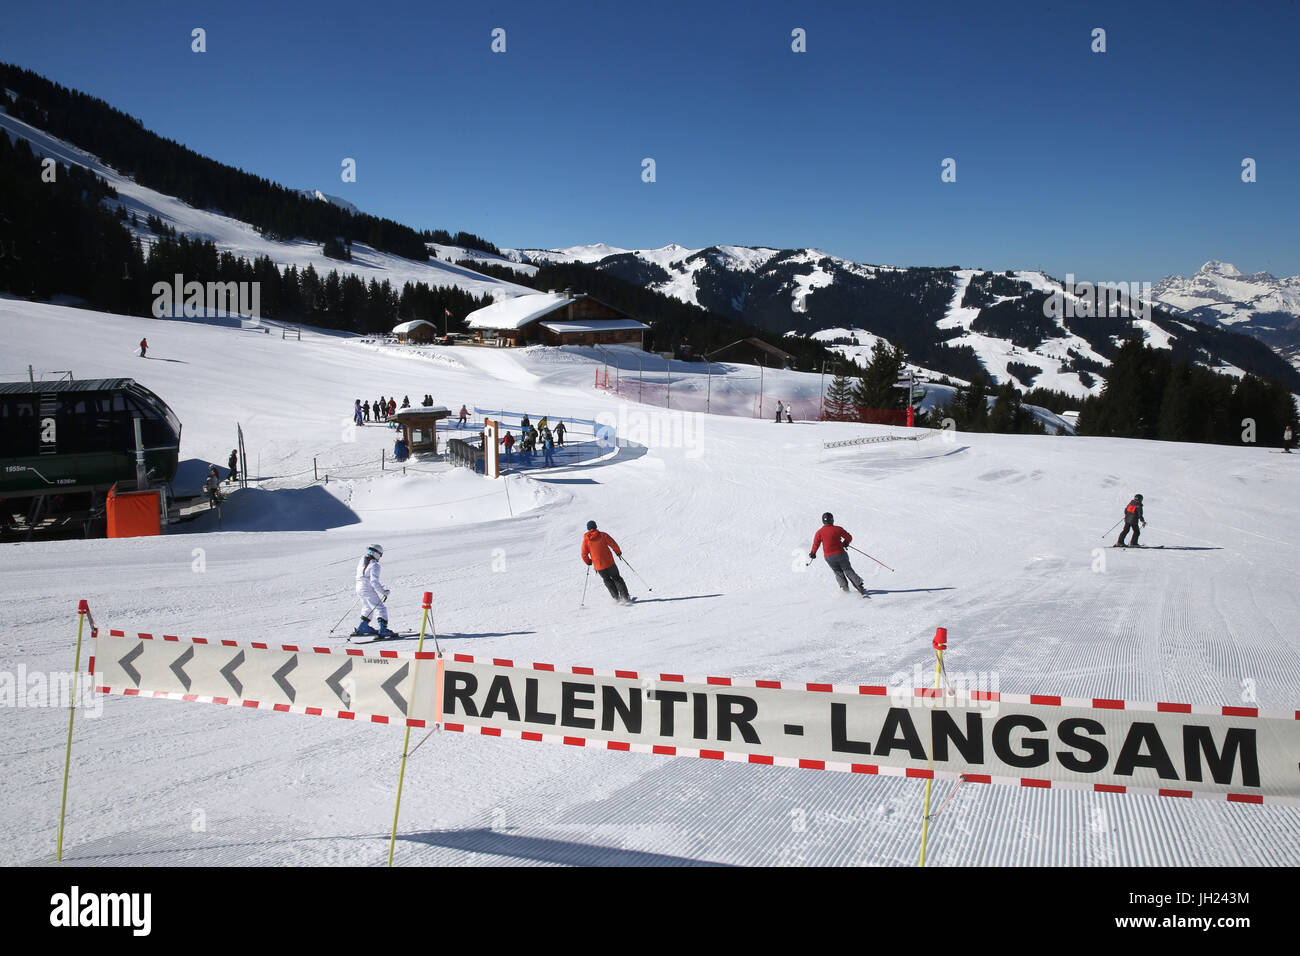 Alpes françaises. Les skieurs lents signe. La France. Banque D'Images